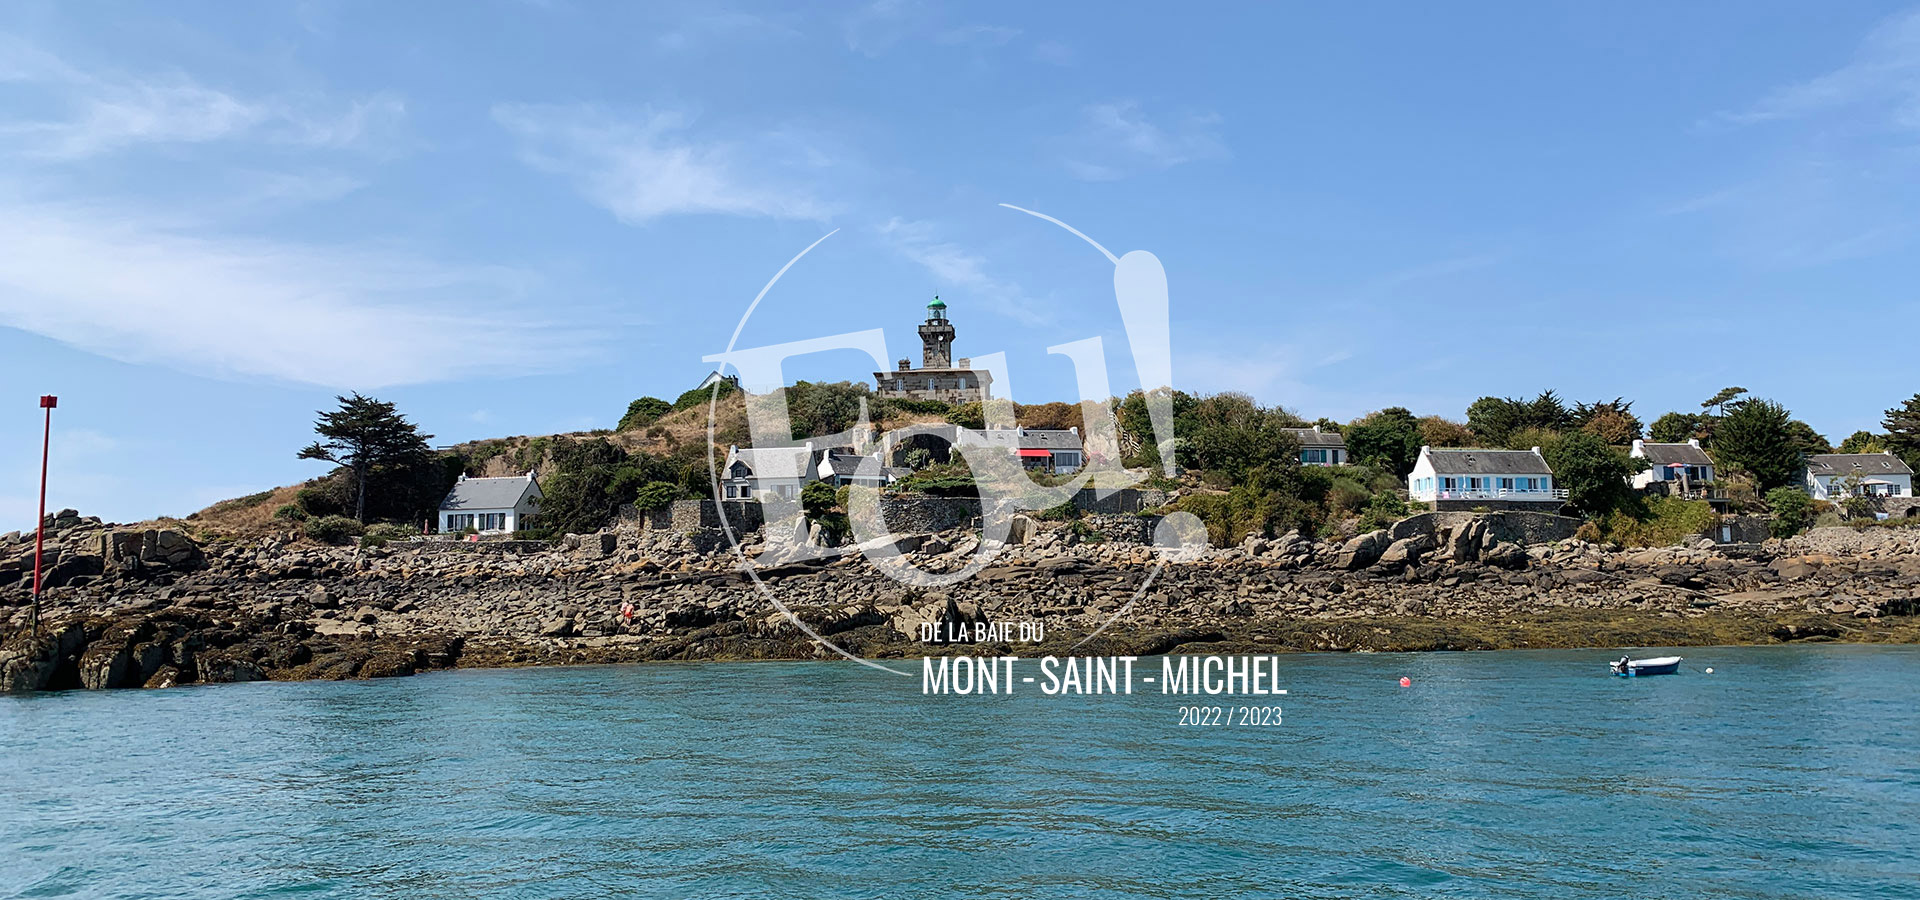 fou-de-la-baie-du-mont-saint-michel-chausey